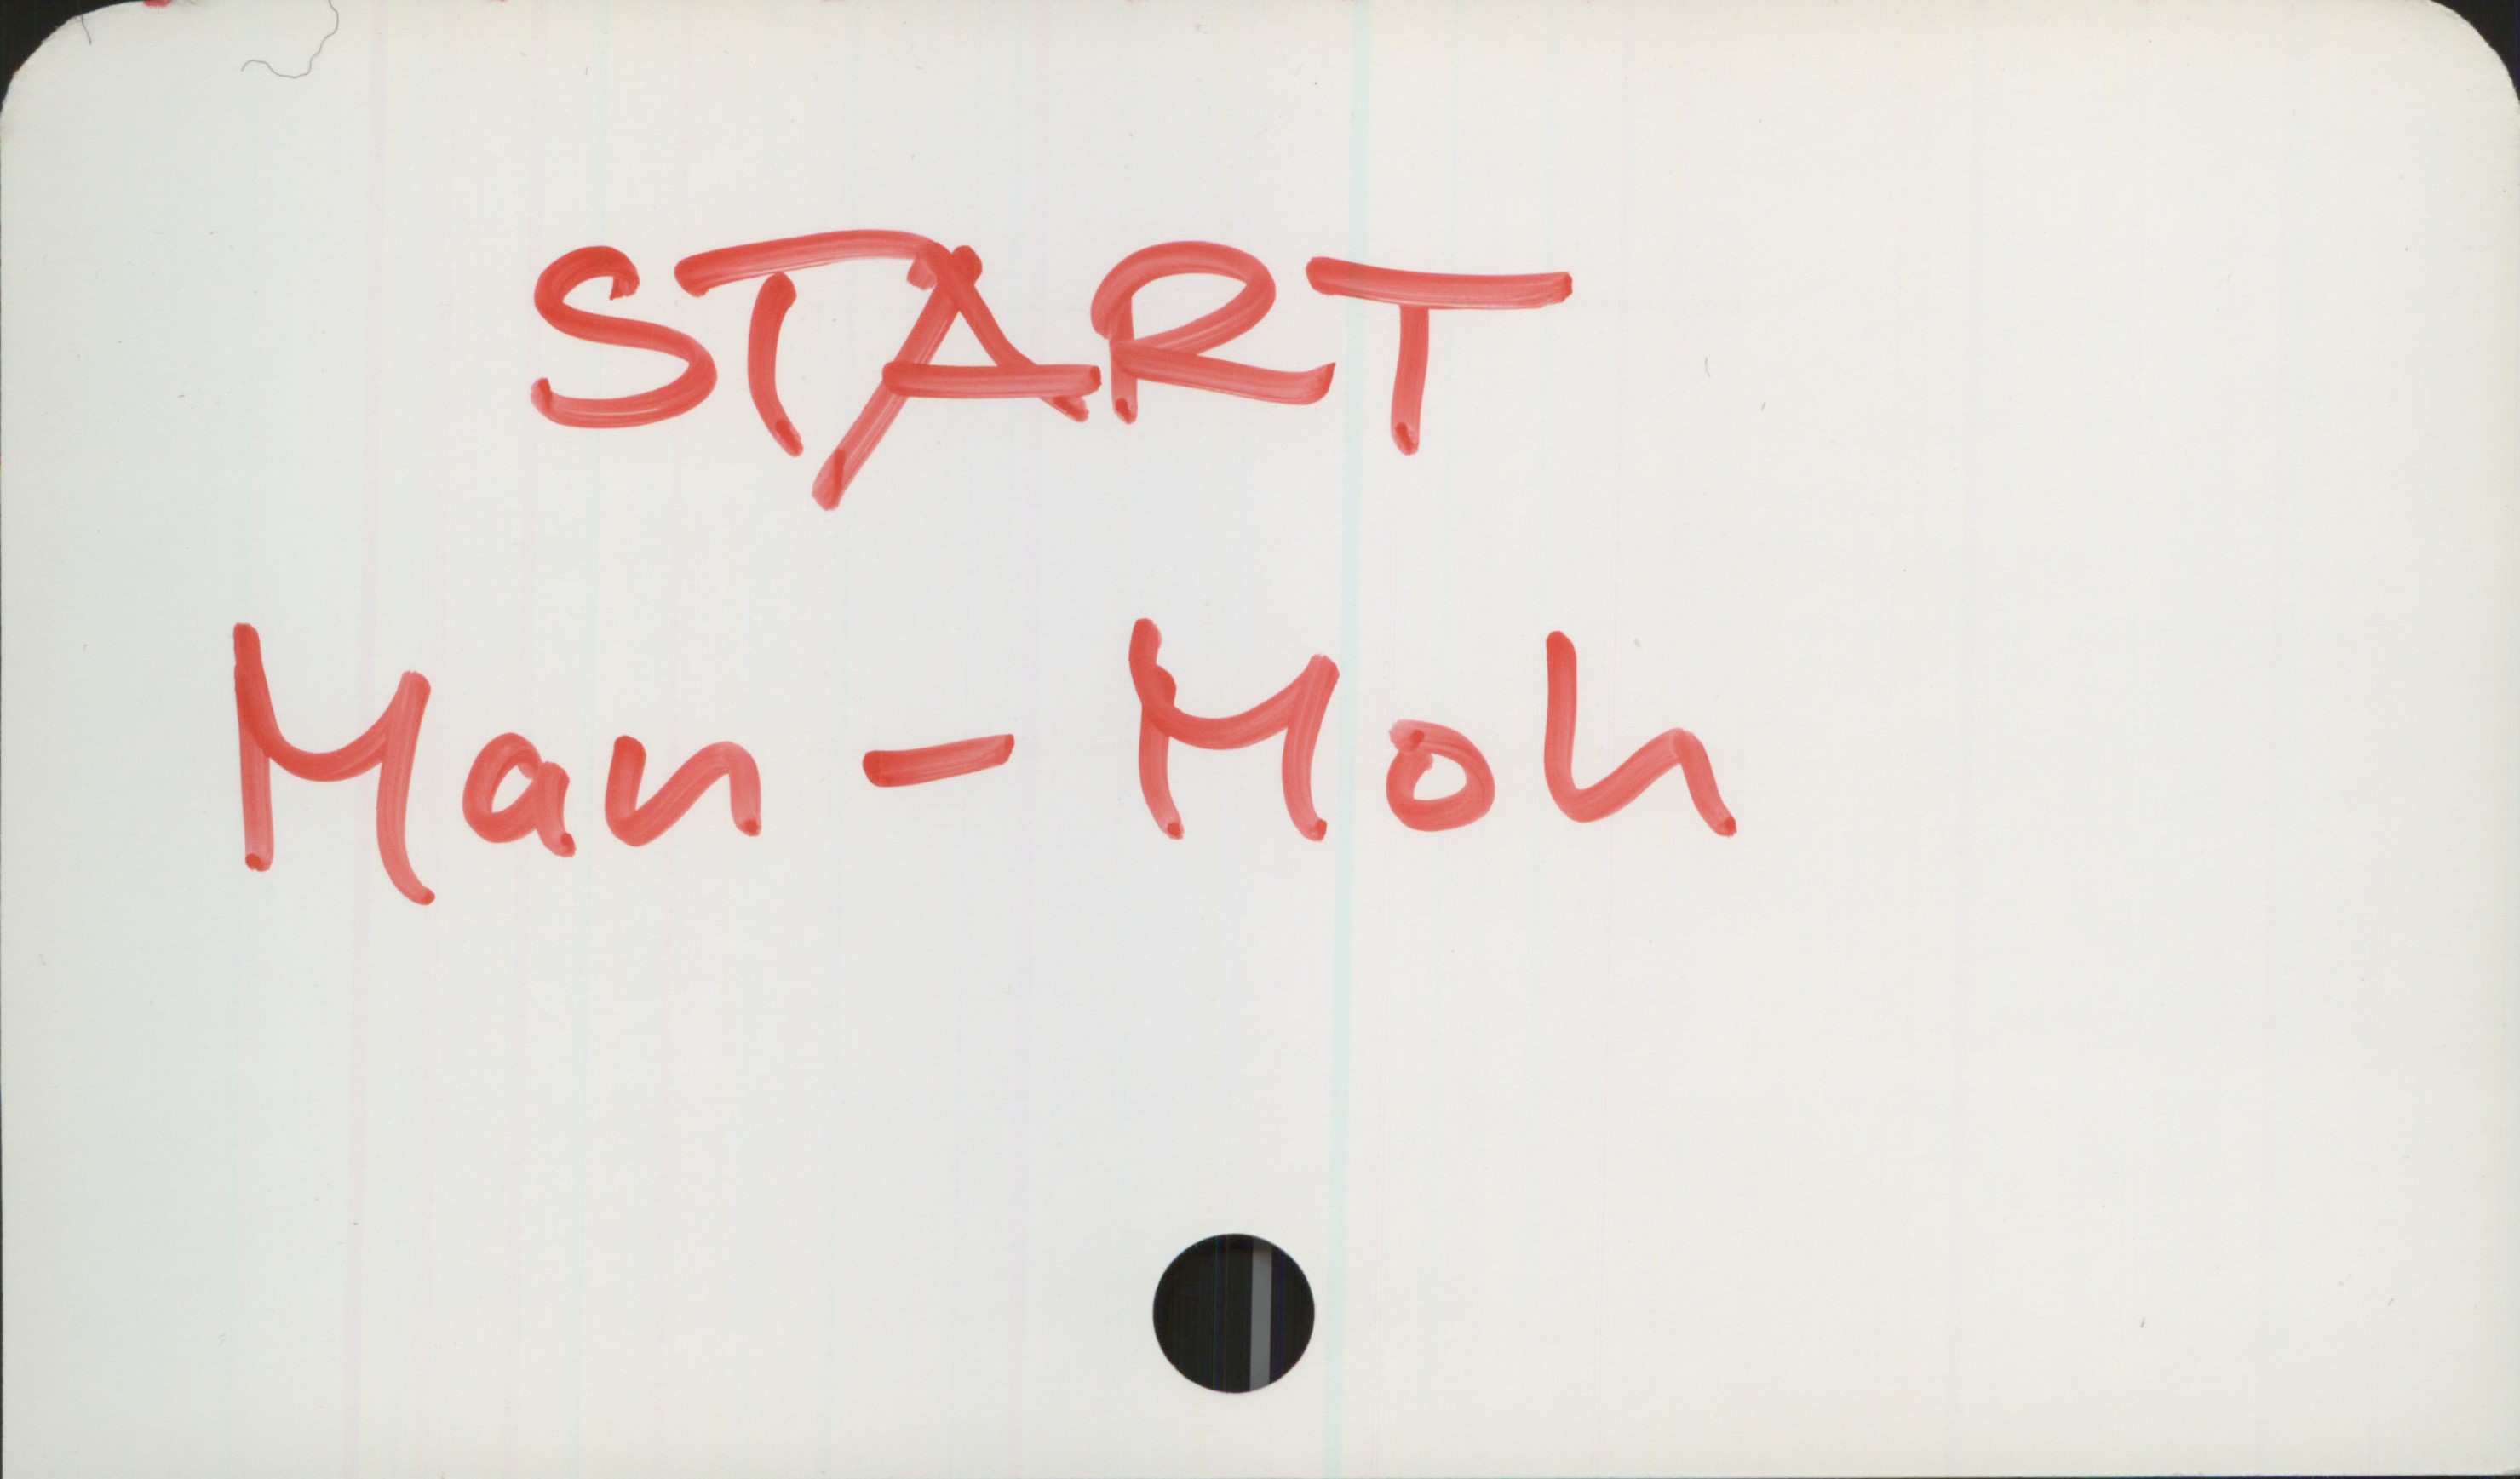 START Man-Moh START
Man-Moh